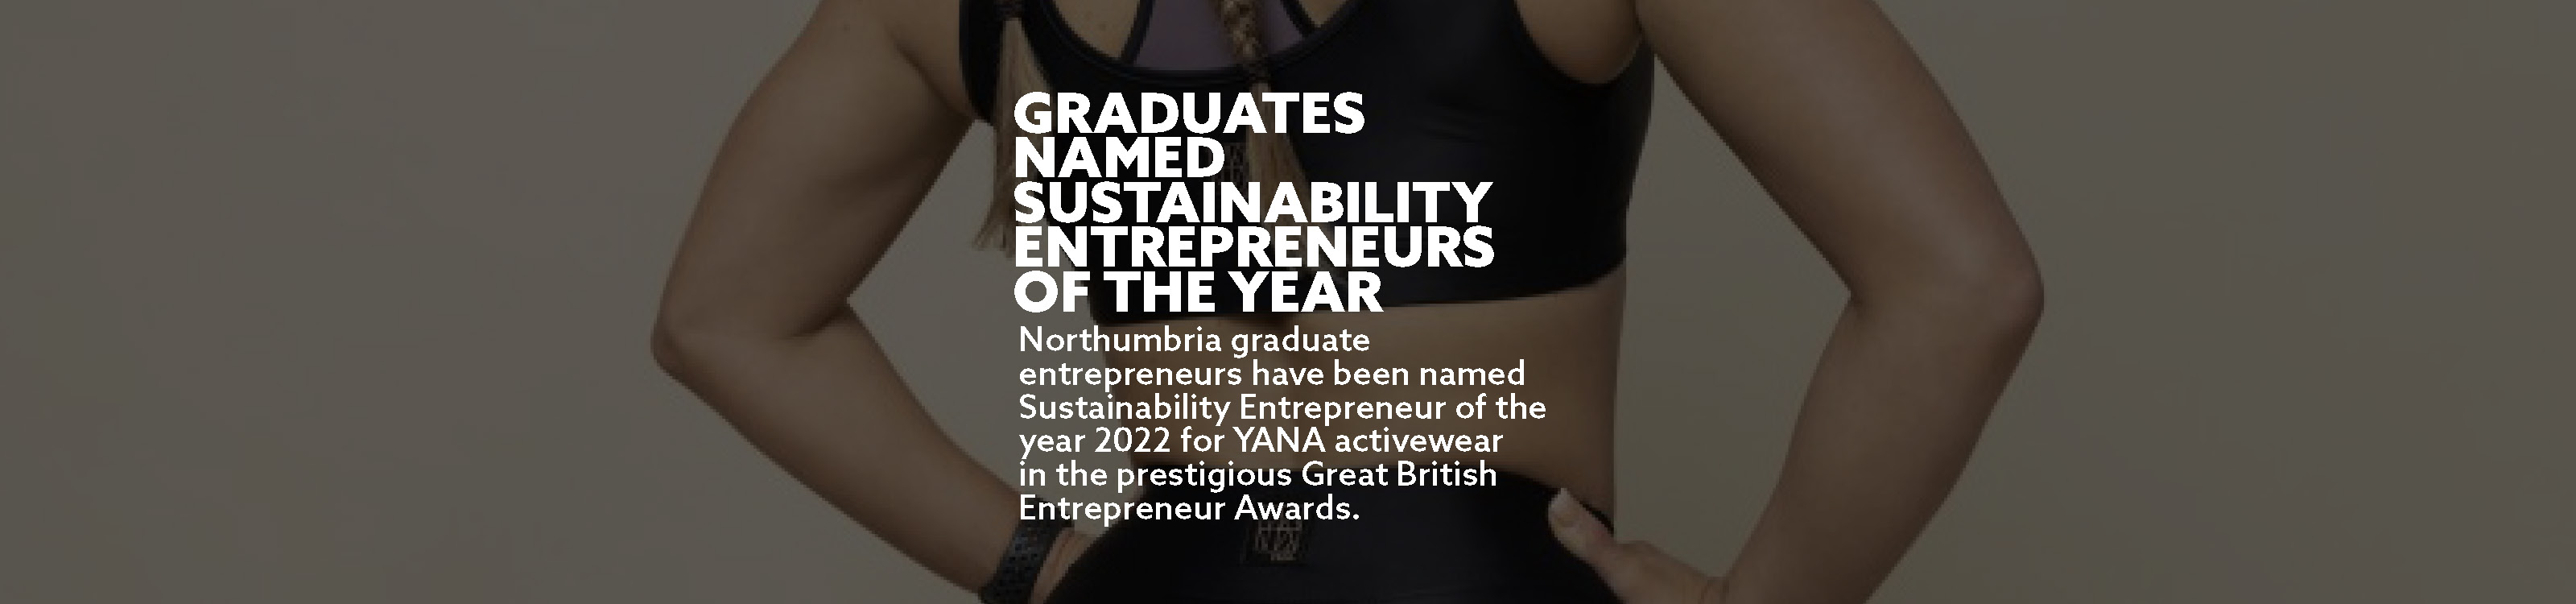 Graduates named sustainability entrepreneurs of the year